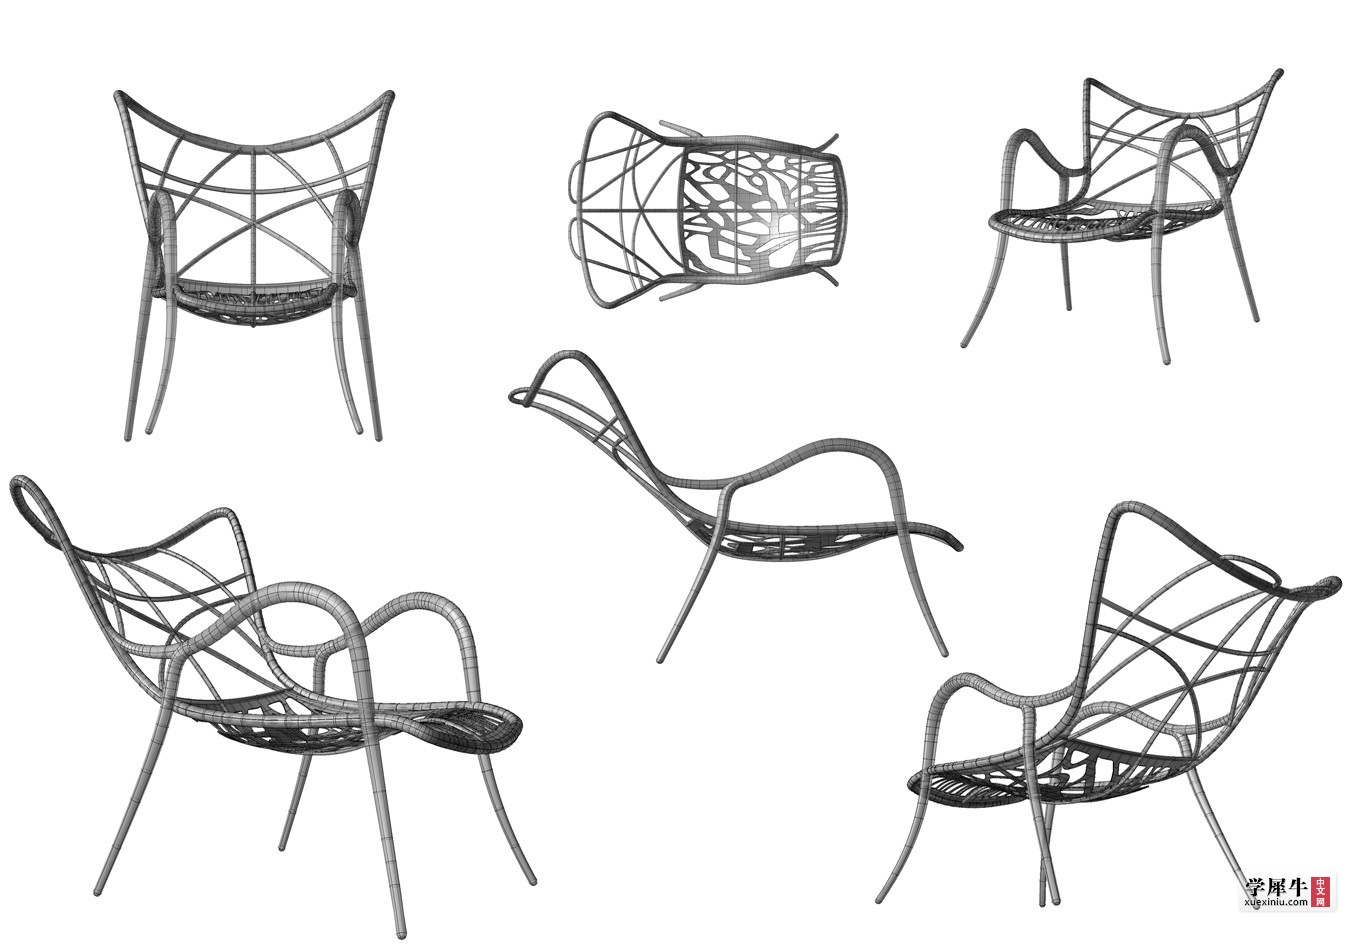 图 4-5 • 管架空花躺椅三视图